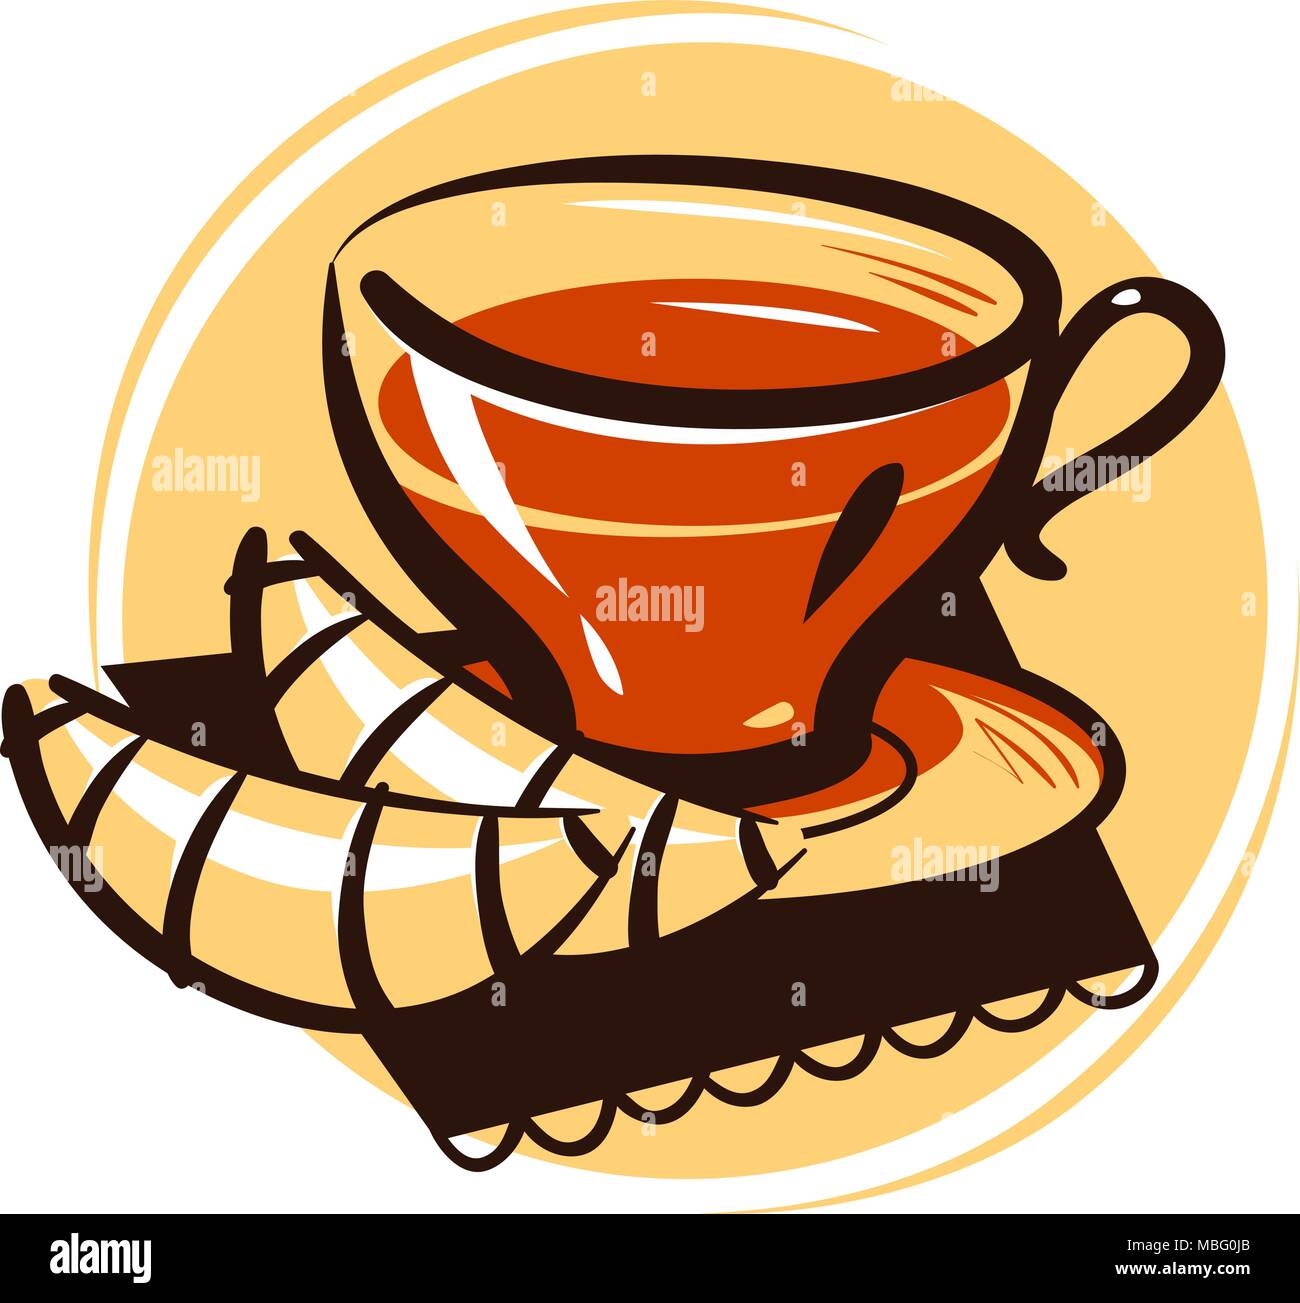 Eine Tasse Tee und Croissant. Tee-Party-Getränk, Dessert-Logo oder -Etikett. Illustration des Zeichentrickvektors Stock Vektor